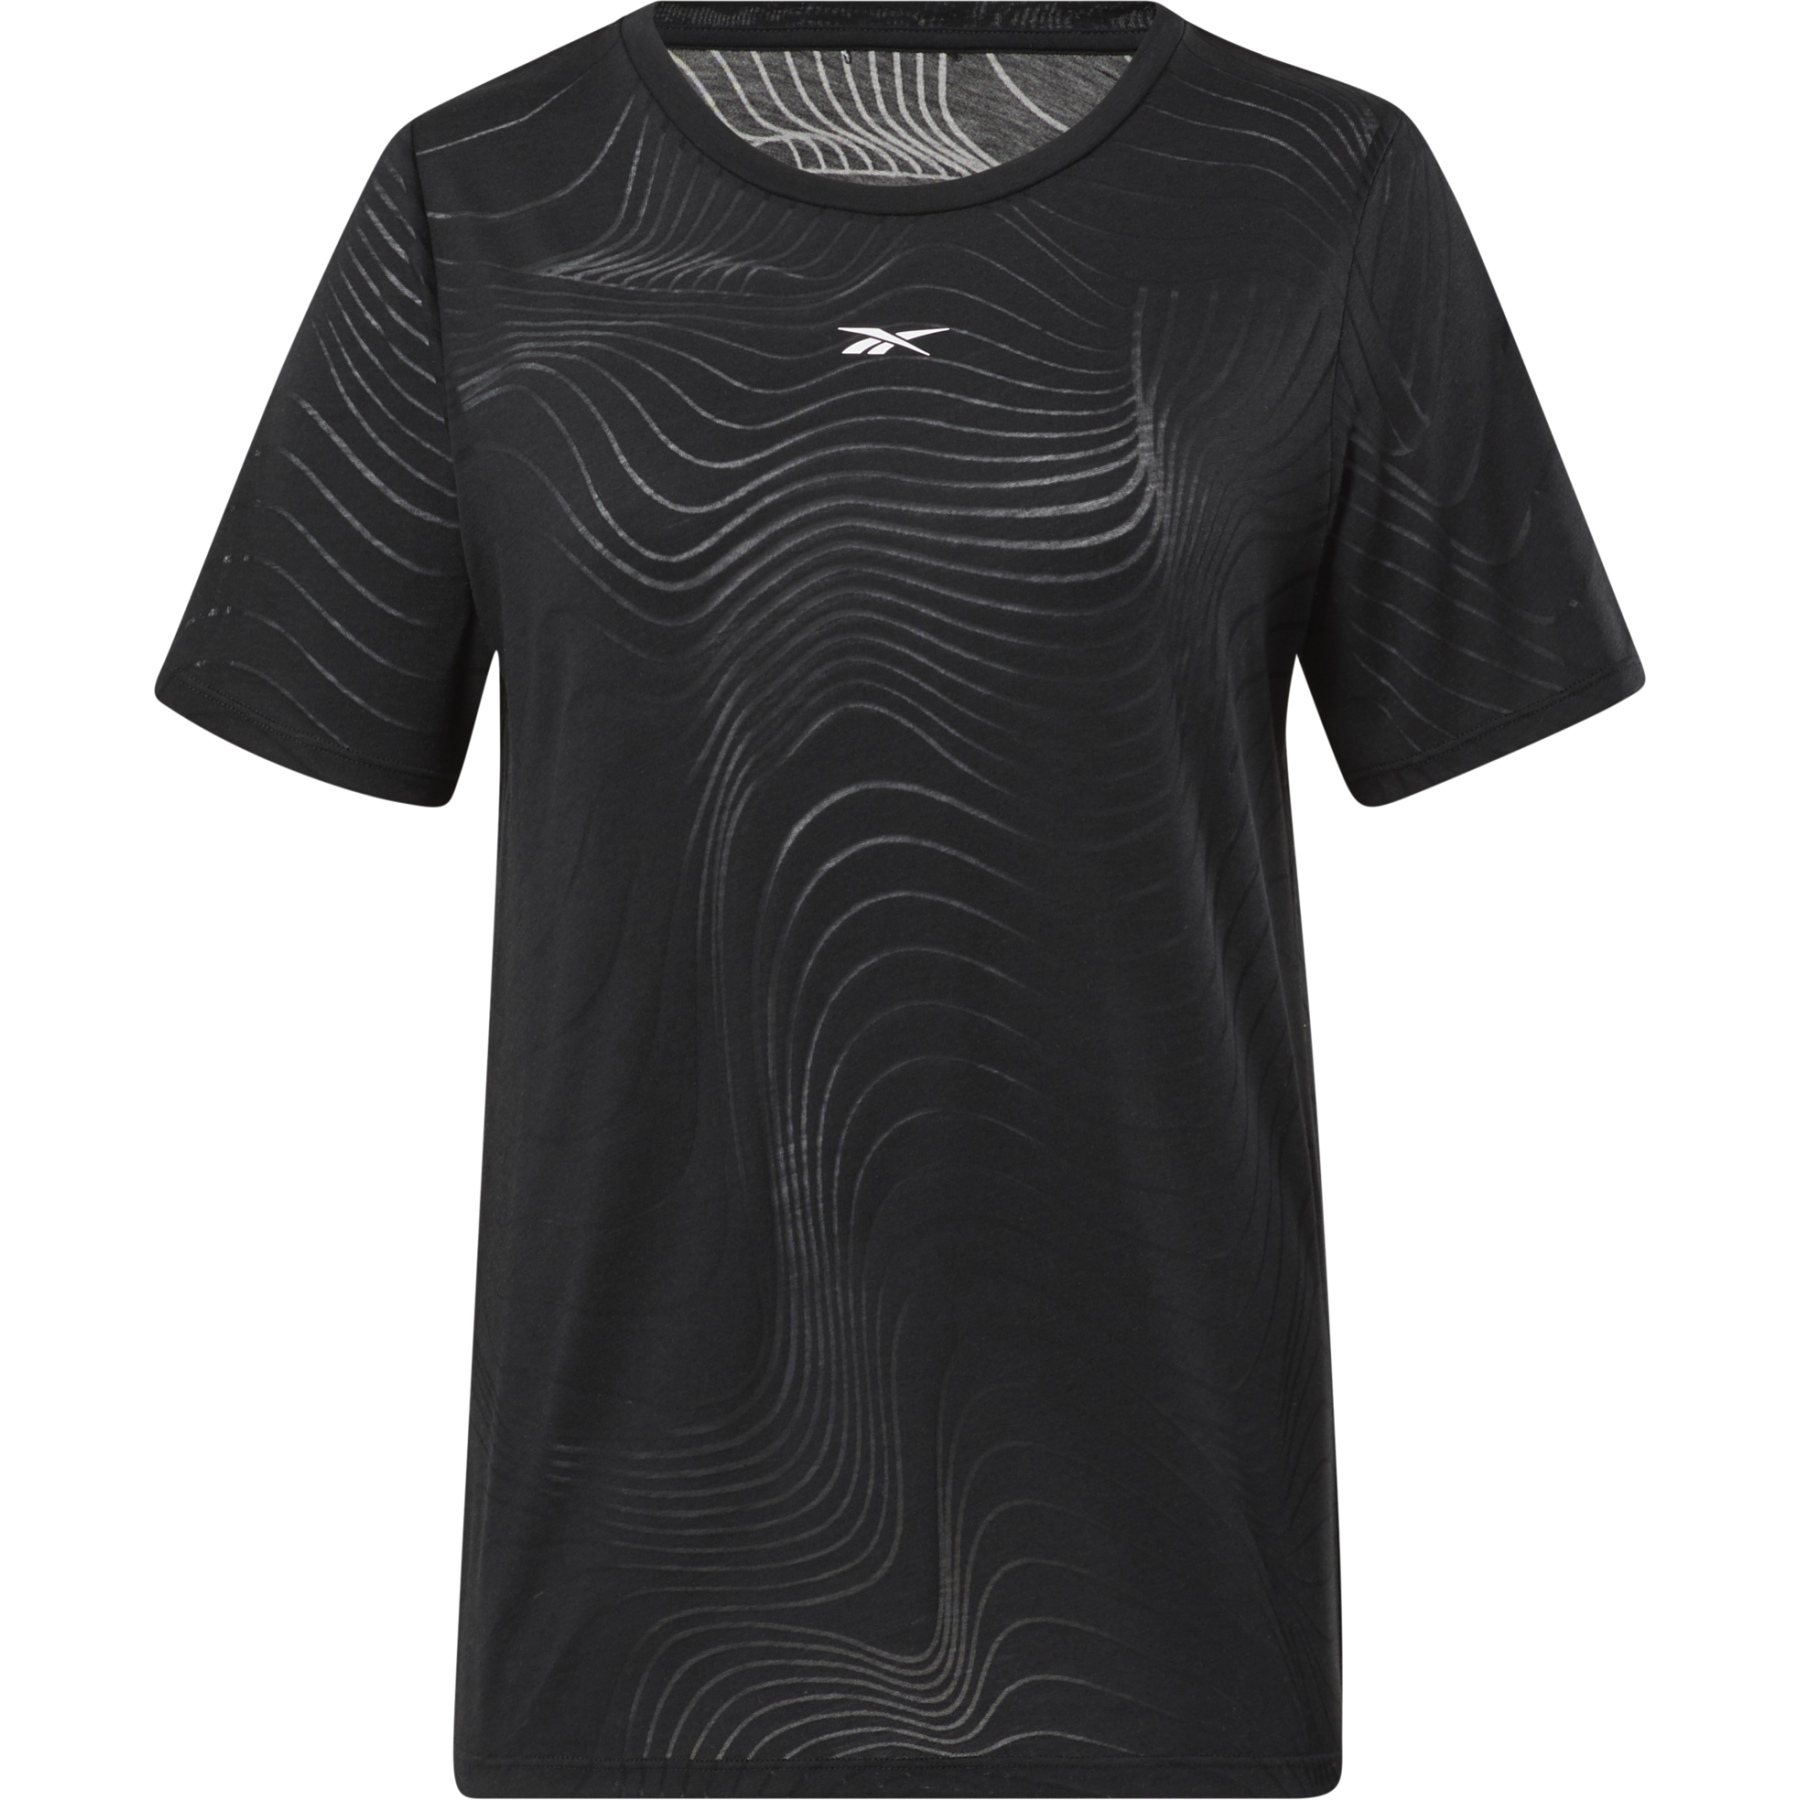 Produktbild von Reebok Burnout Damen T-Shirt - schwarz